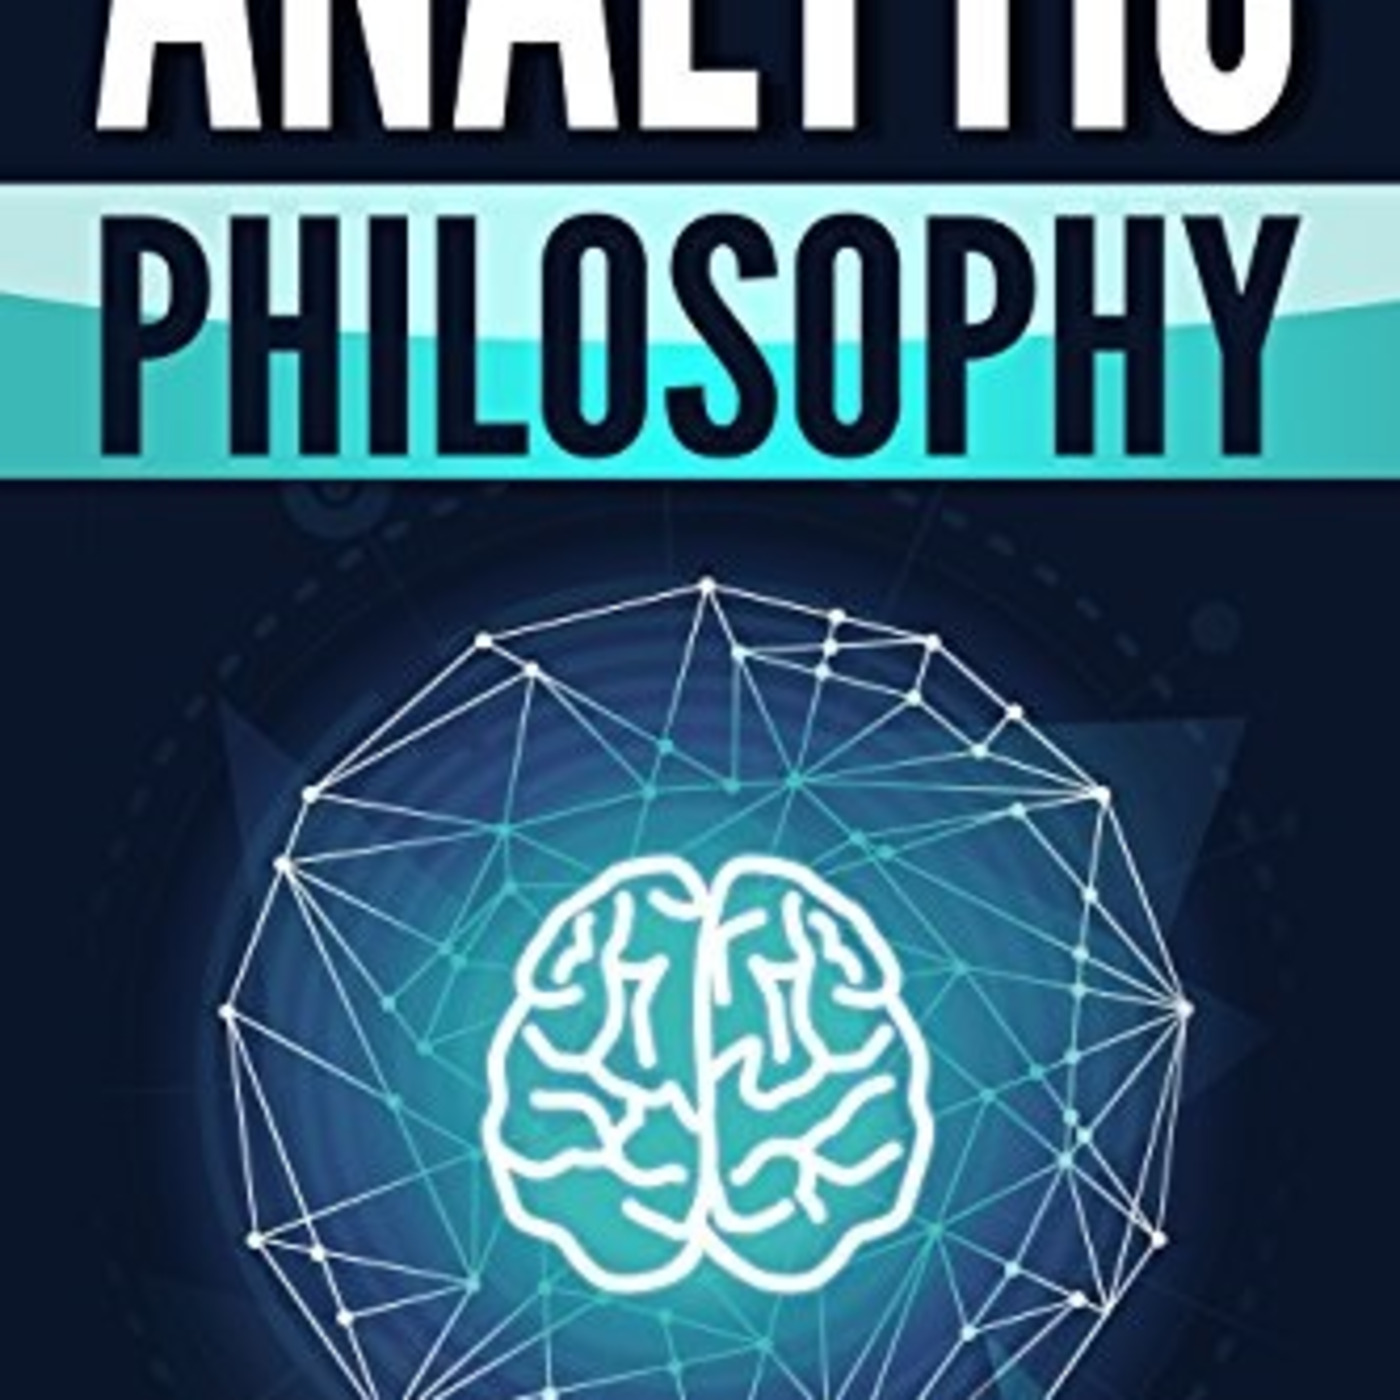 Philosophypedia